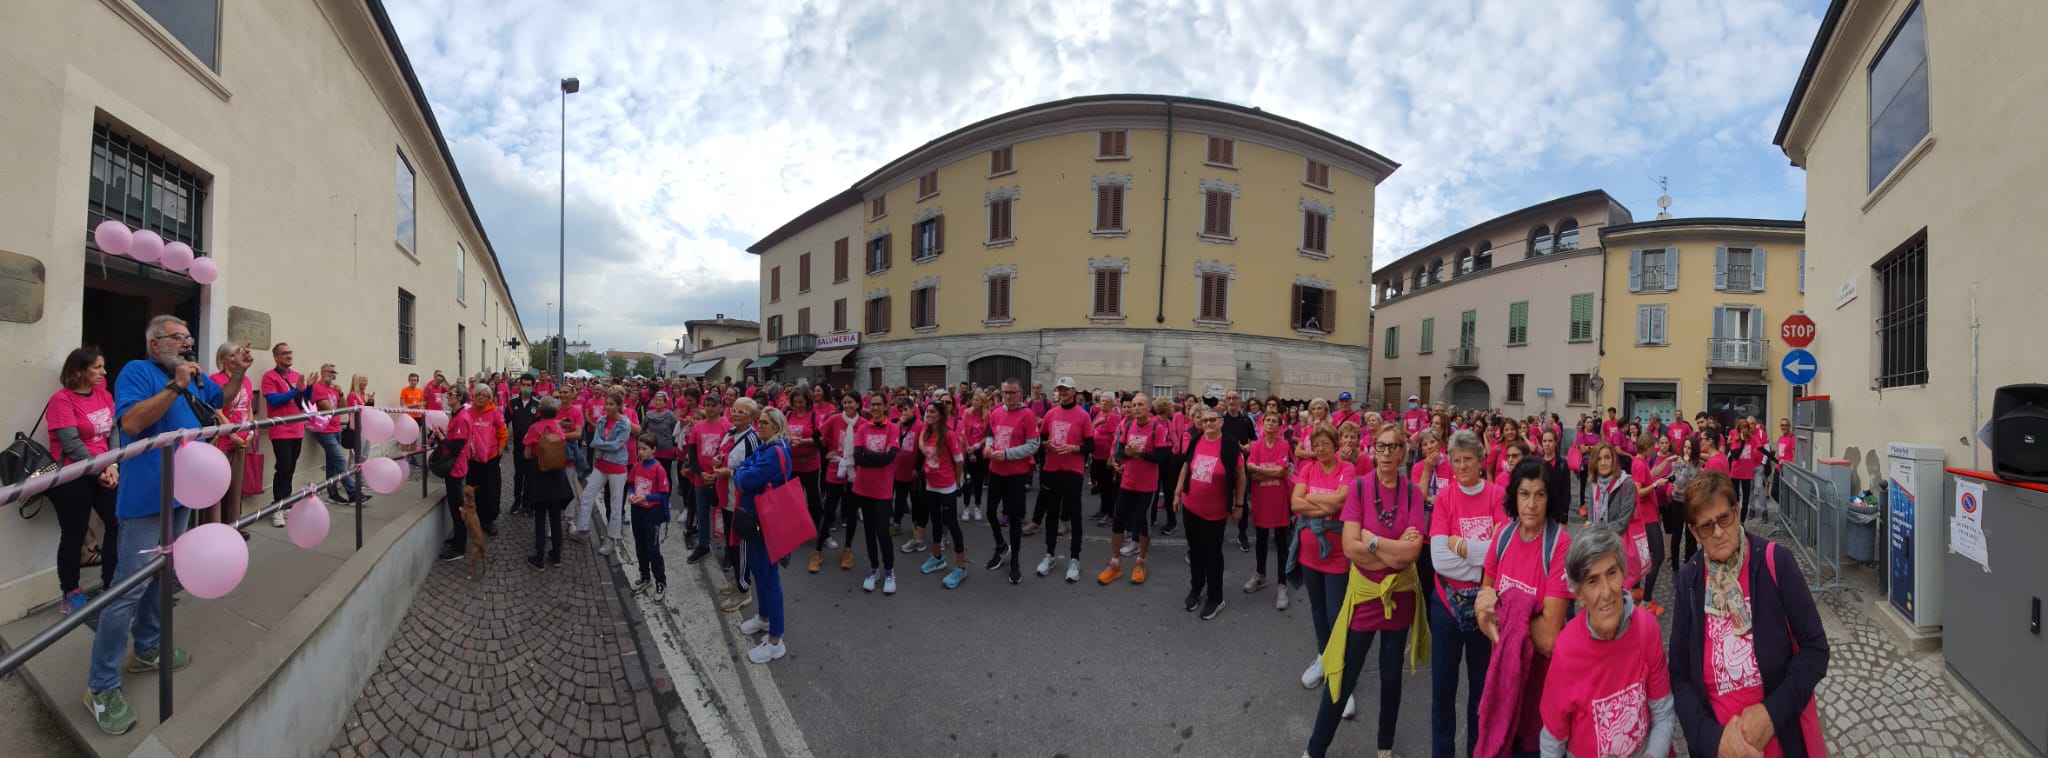 Amici di Gabri - Caravaggio cammina in rosa (5)